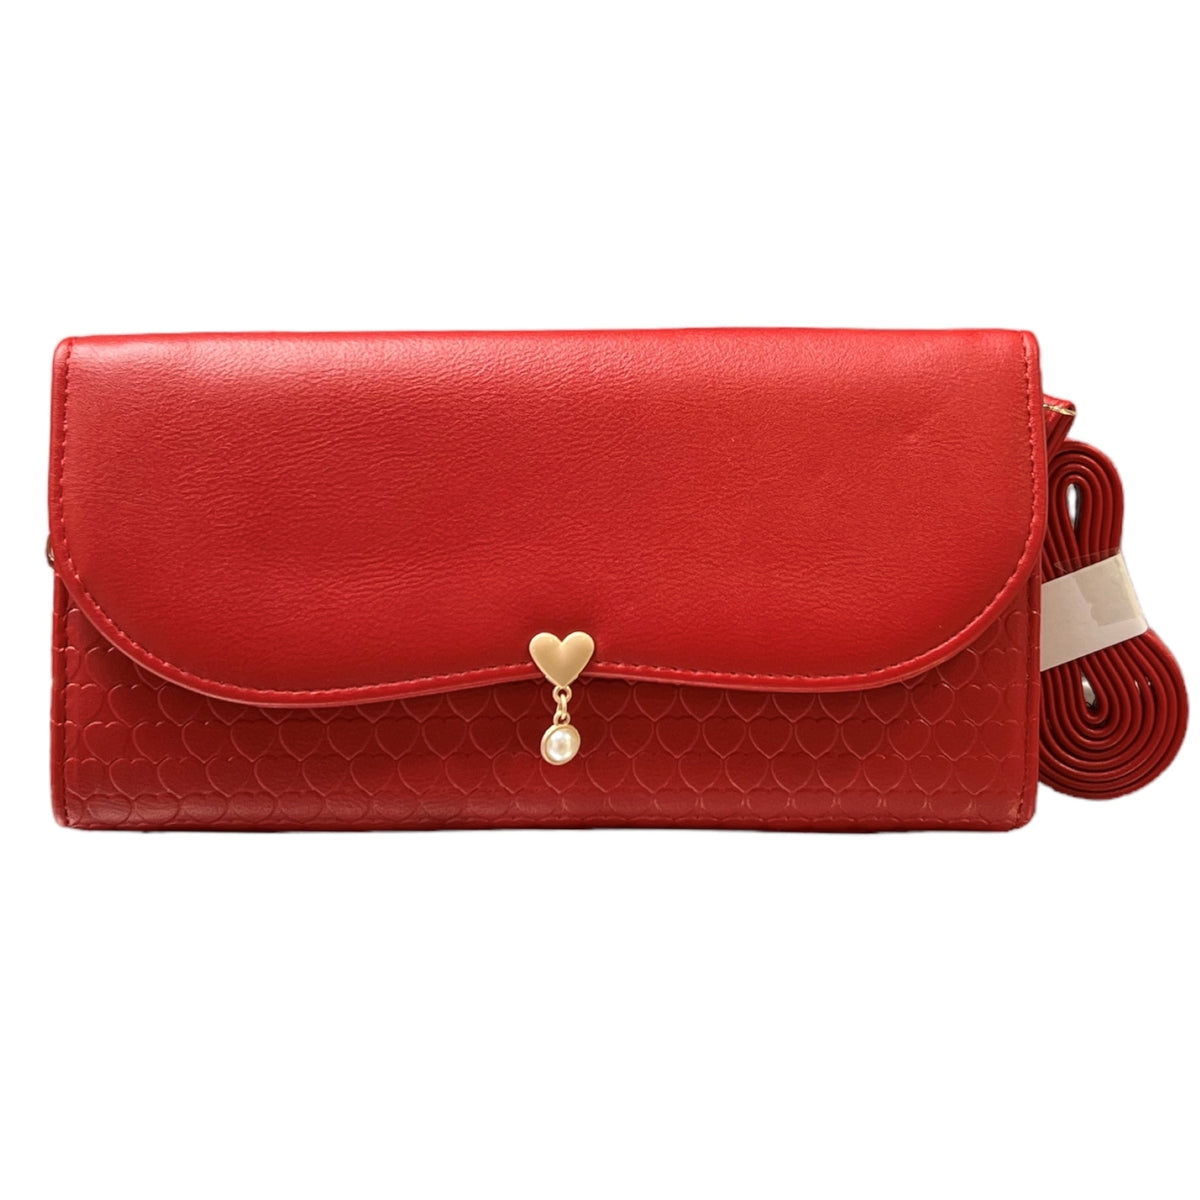 Bienvenue dans le monde audacieux de C'EST ELLE! Ce portefeuille avec ganse rouge offre une sensation de luxe et de risque; son design beau vous permettra de prendre le contrôle de votre look. Vivez votre aventure avec style et audace!